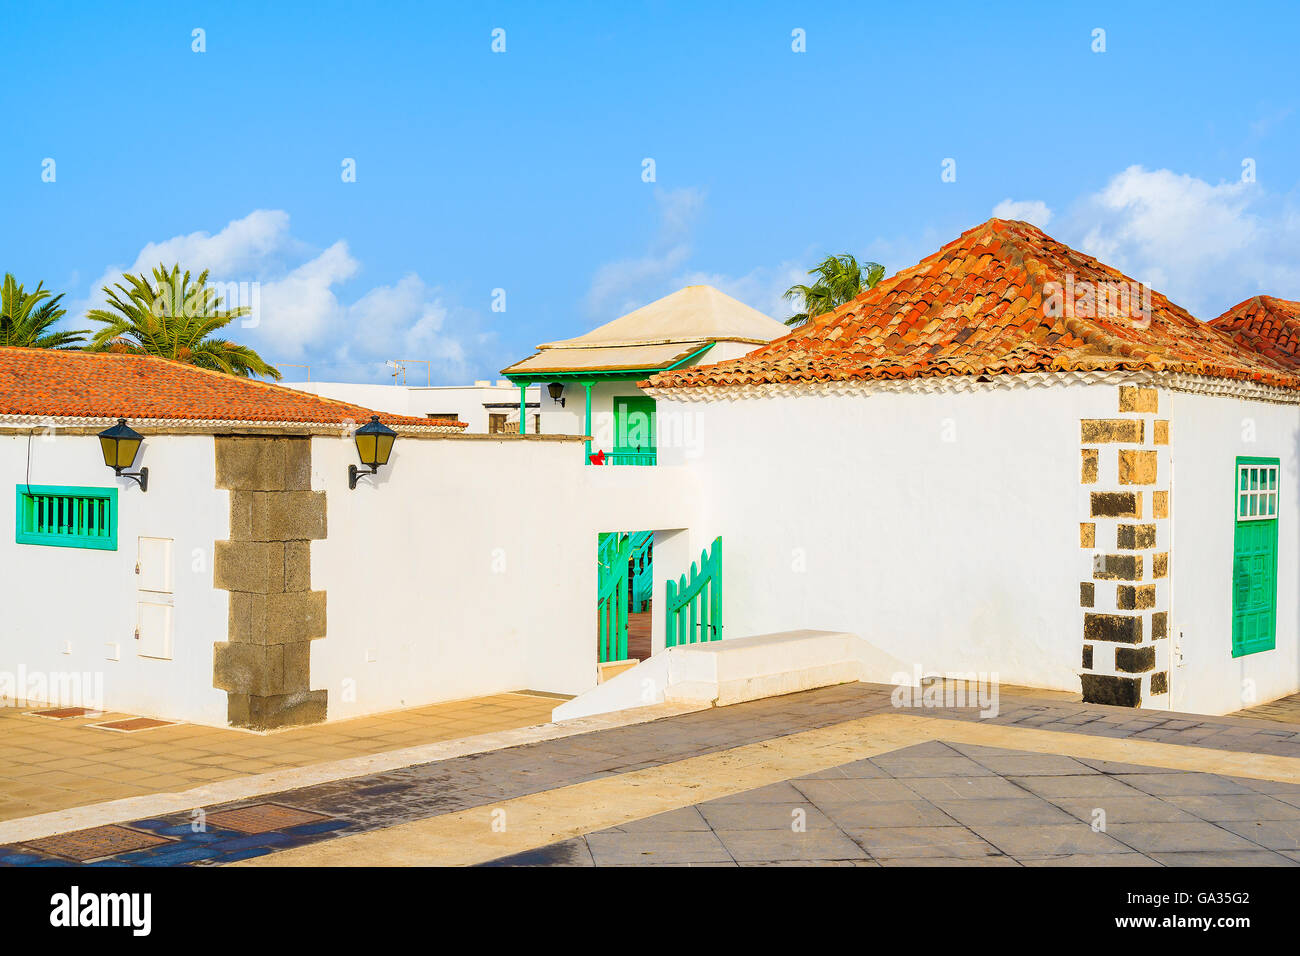 Maisons de style Canarien typique village Yaiza, Lanzarote, îles Canaries, Espagne Banque D'Images